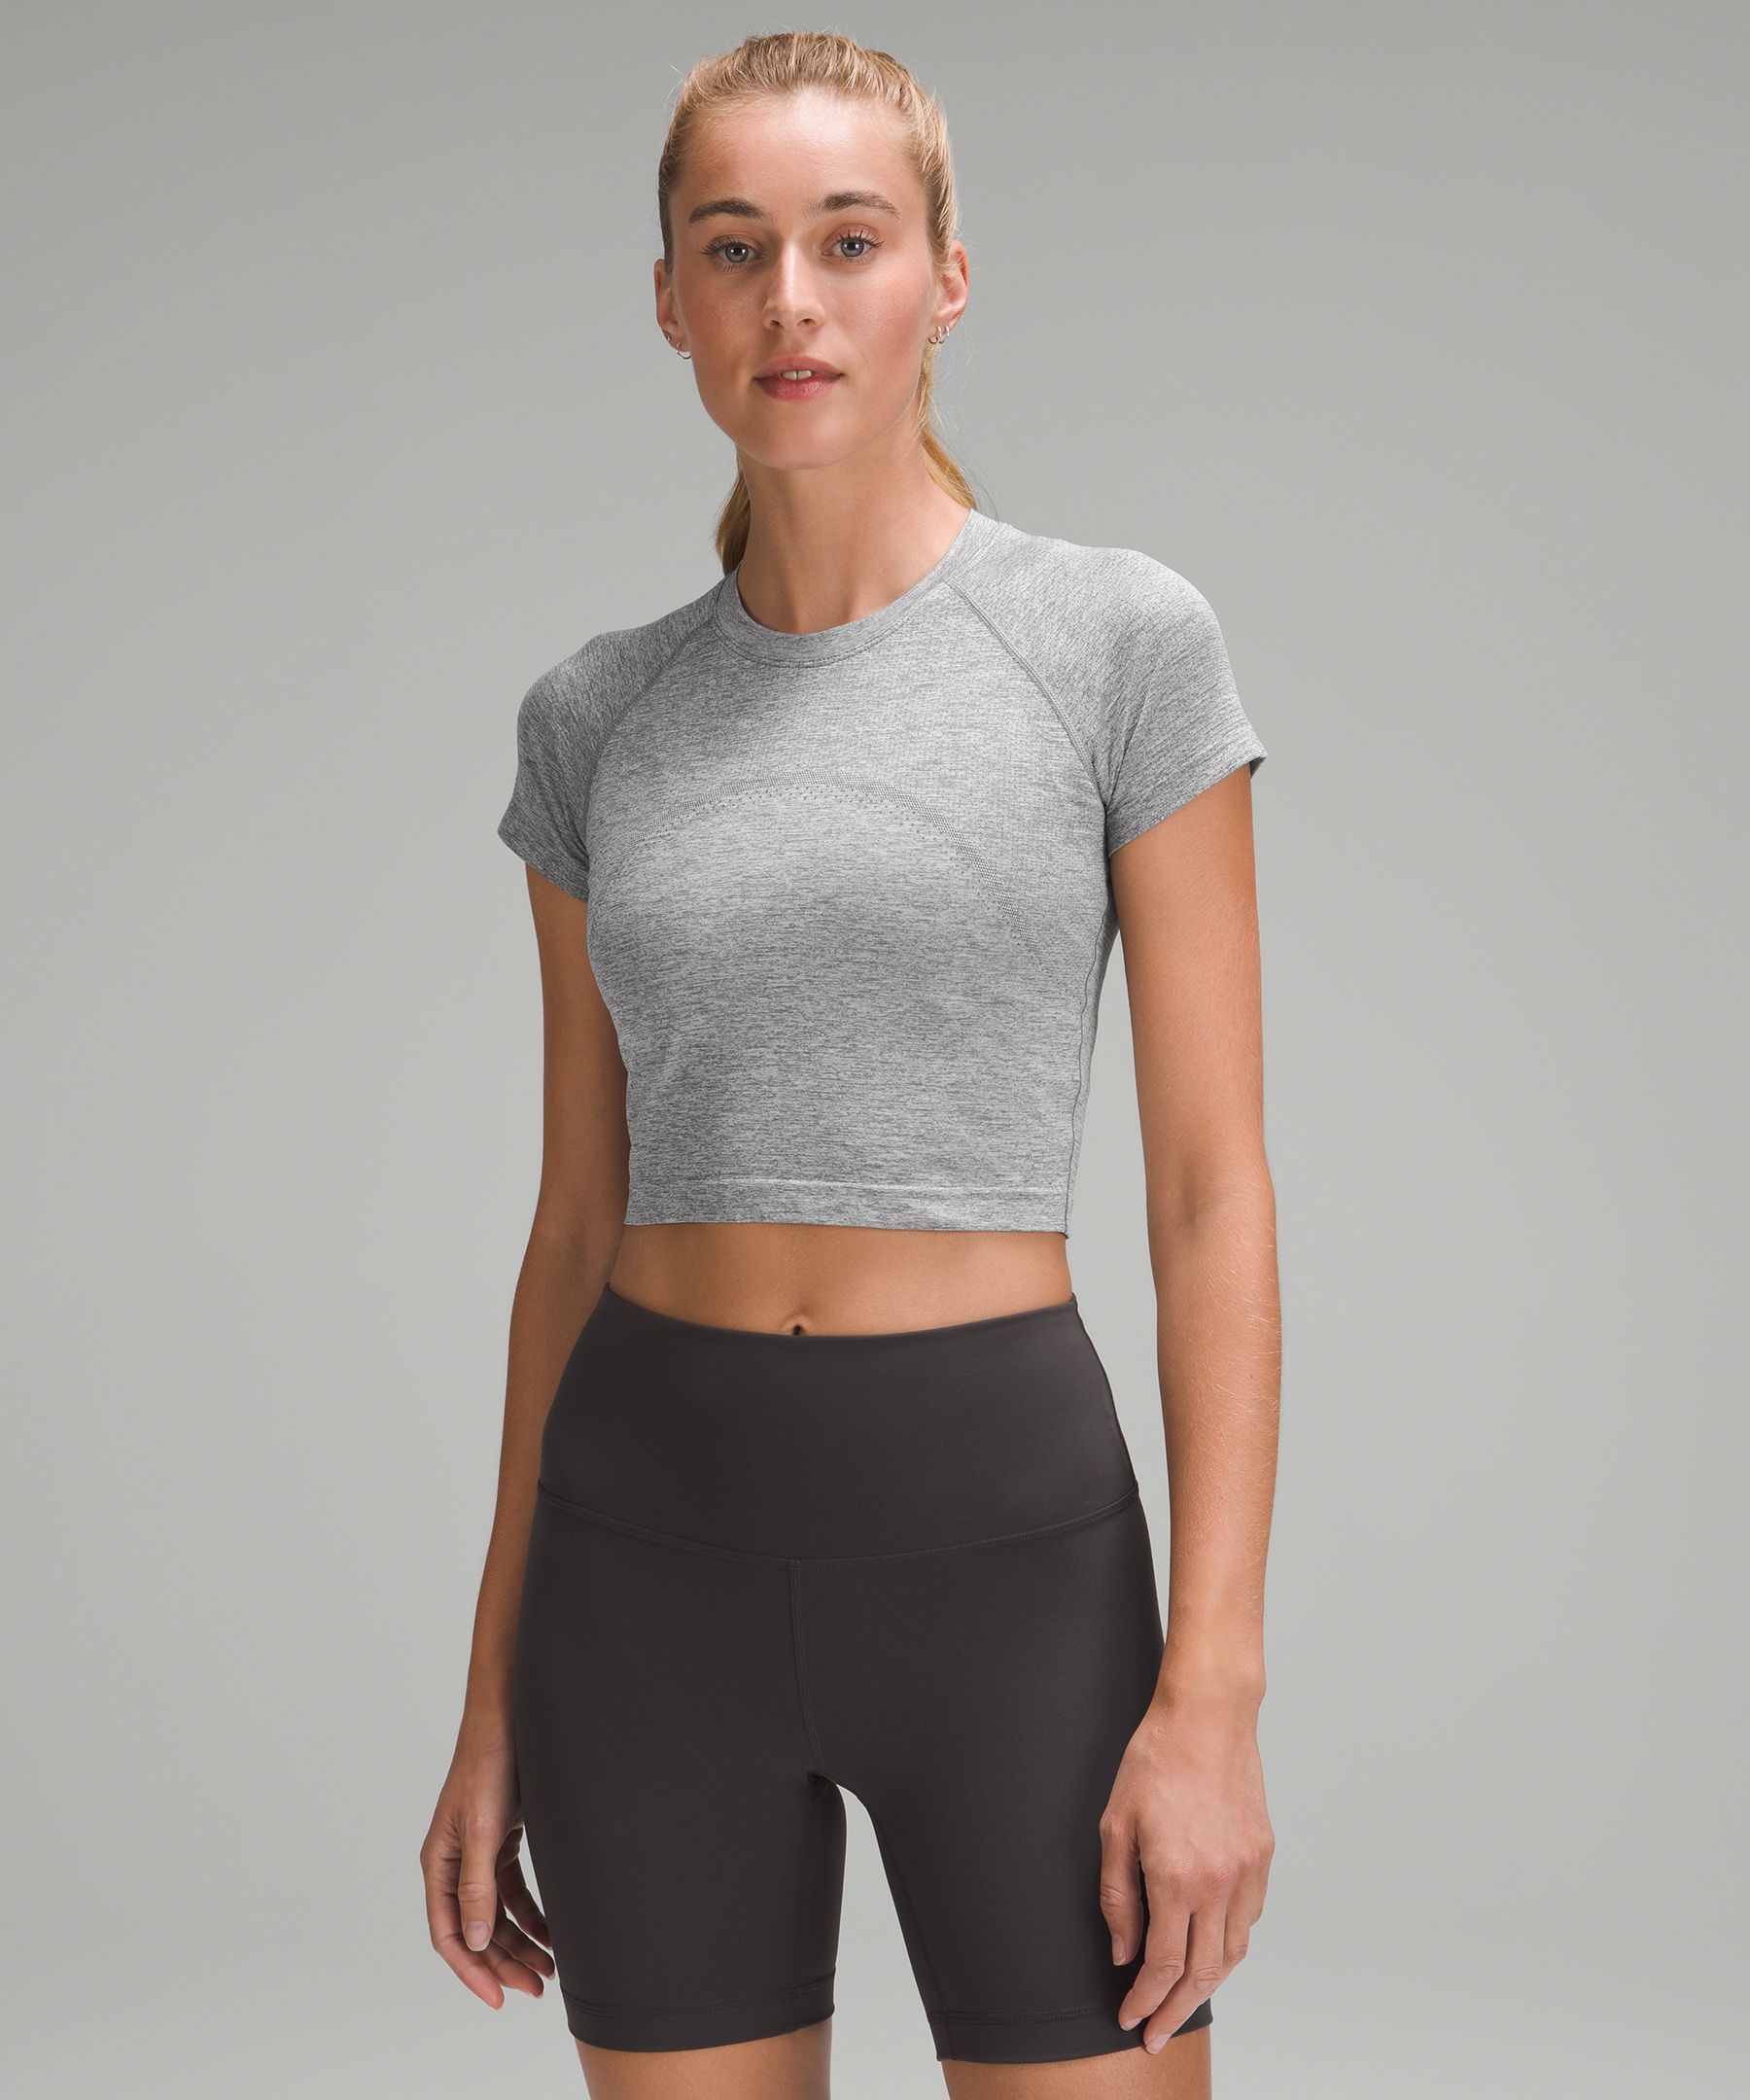 Lululemon Women's Swiftly Tech Short Sleeve 2.0 Model # LW3DFNS Size US  10/UK 14